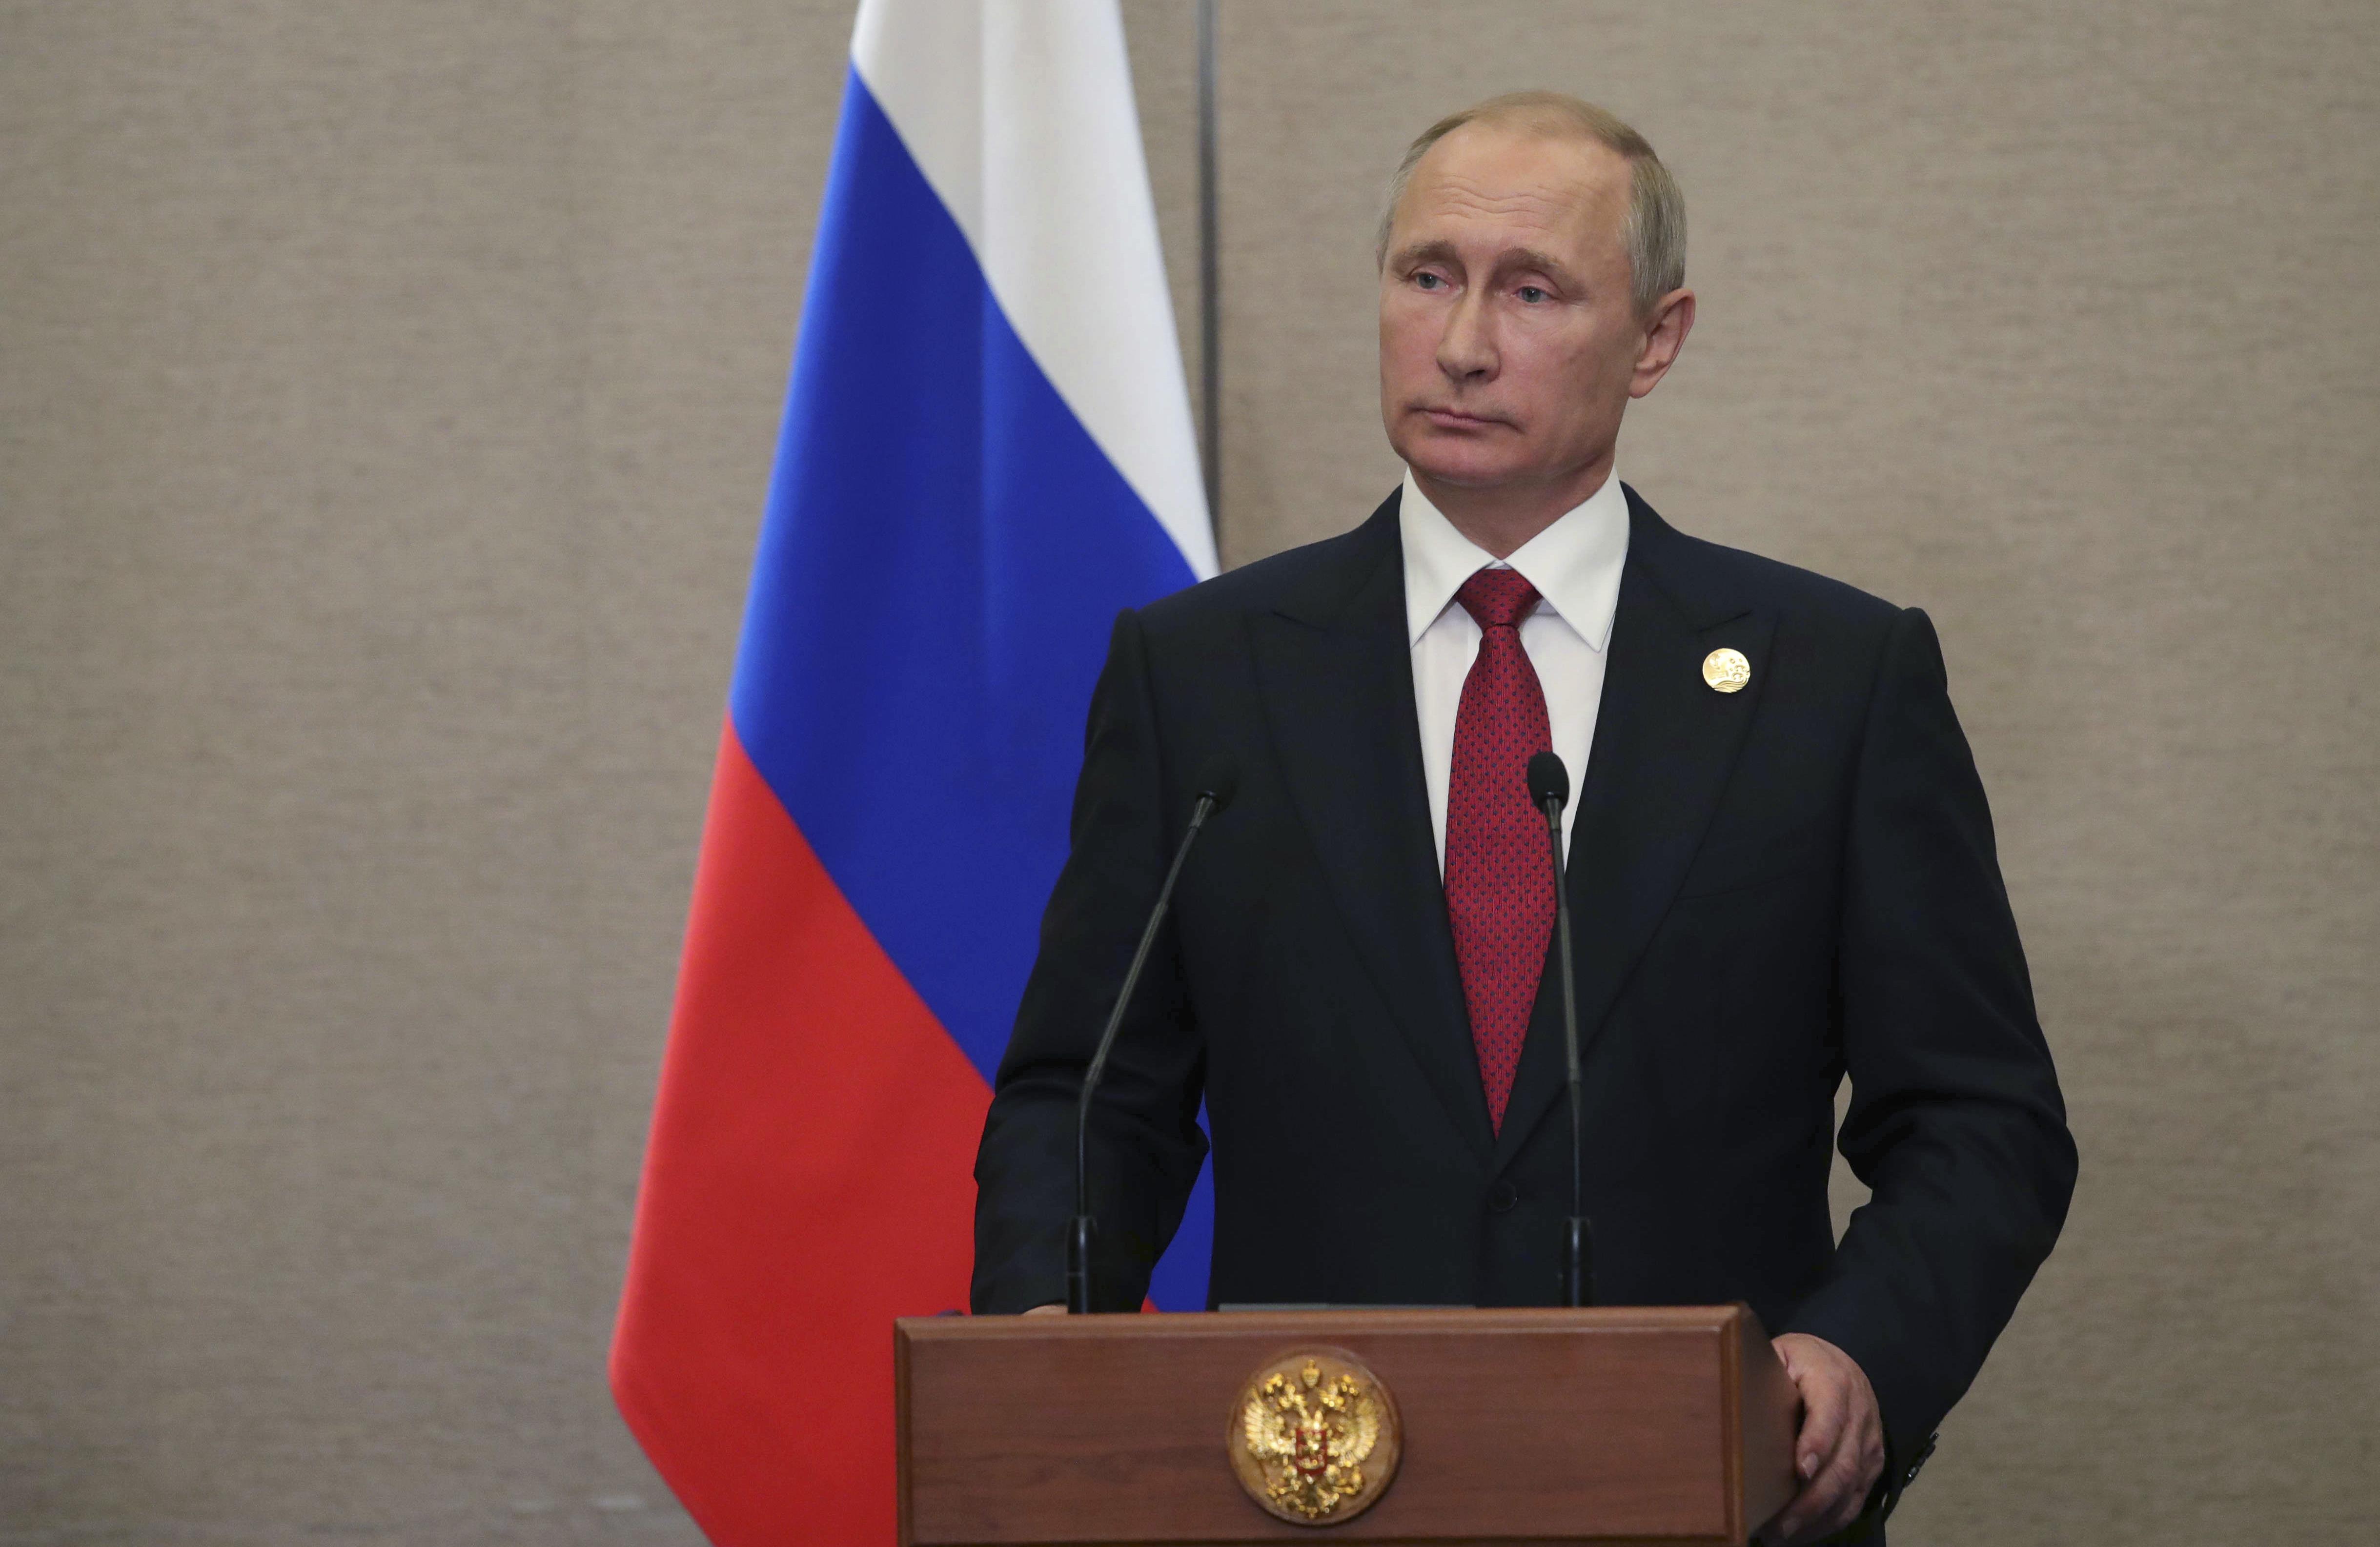 La medida rusa surge luego de las impulsadas por EE.UU. contra los medios de comunicación rusos que operan en Washington.